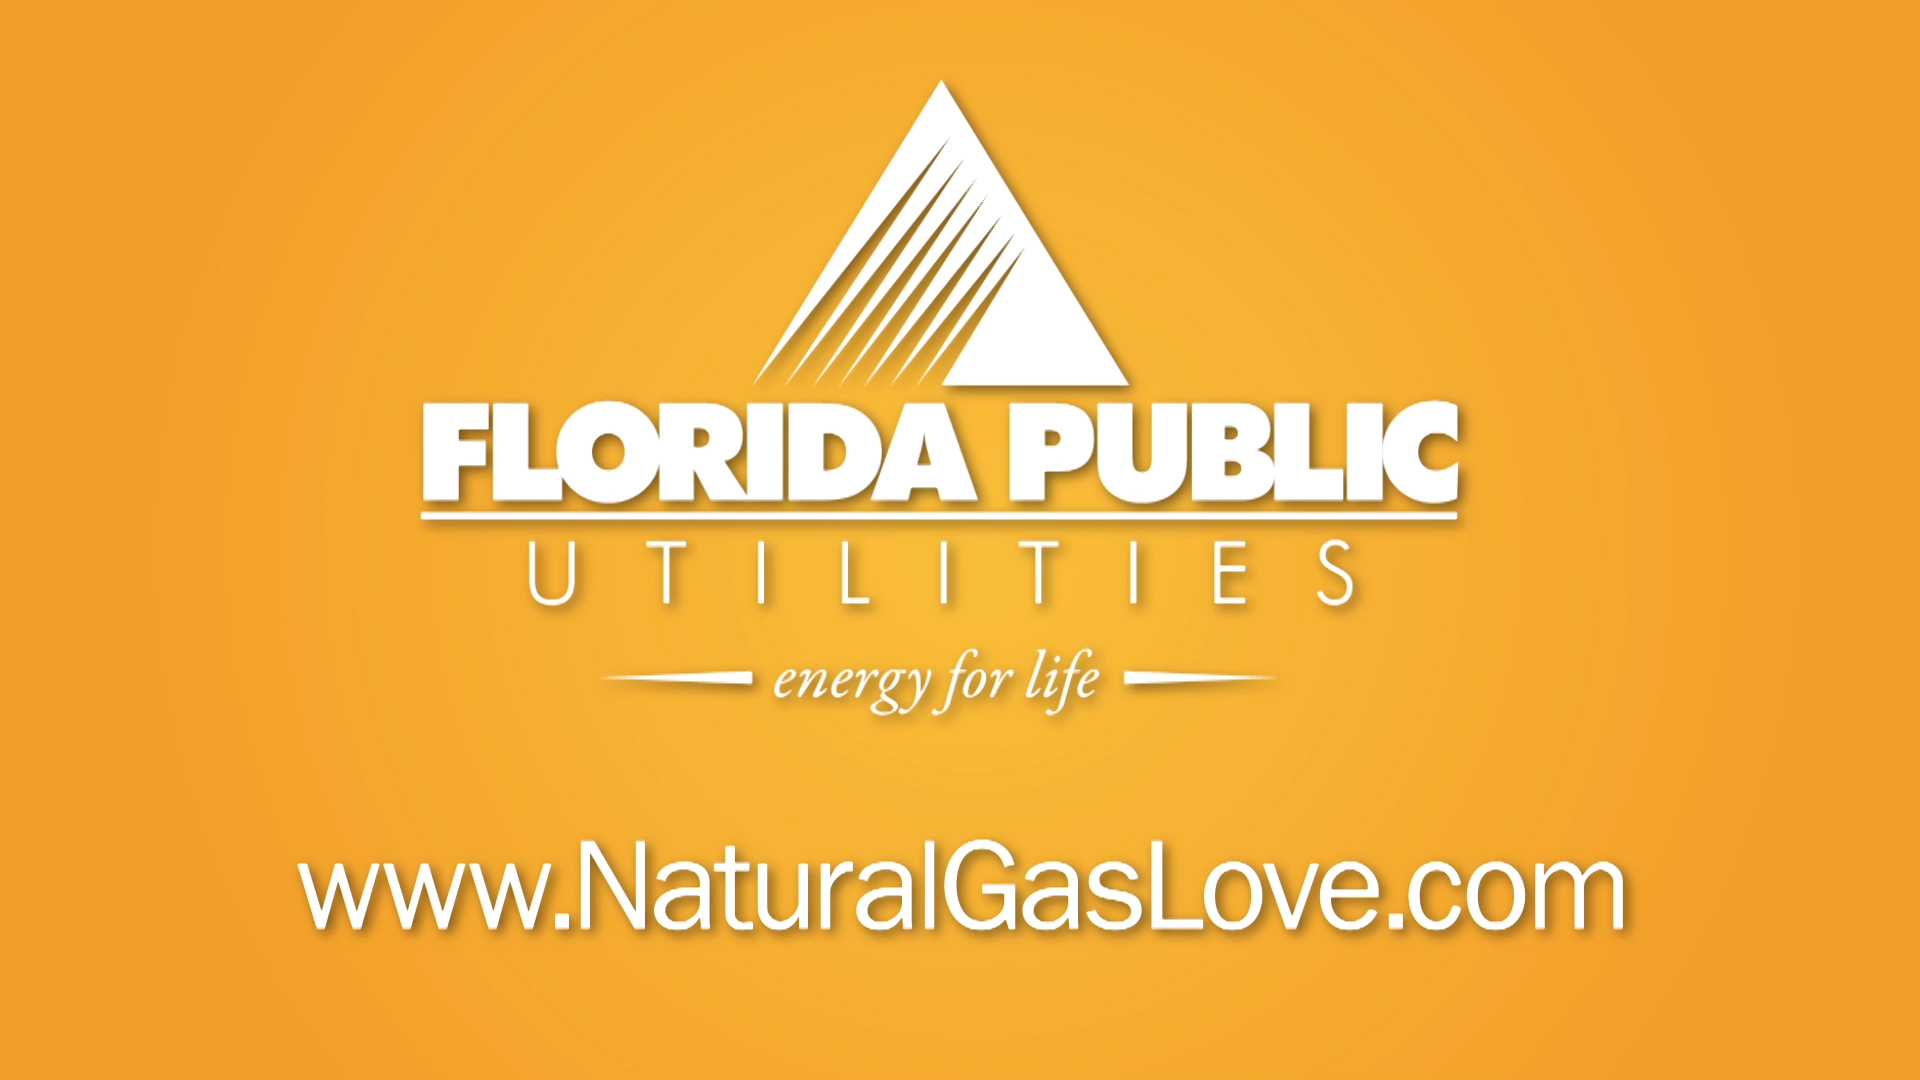 Florida Public Utilities